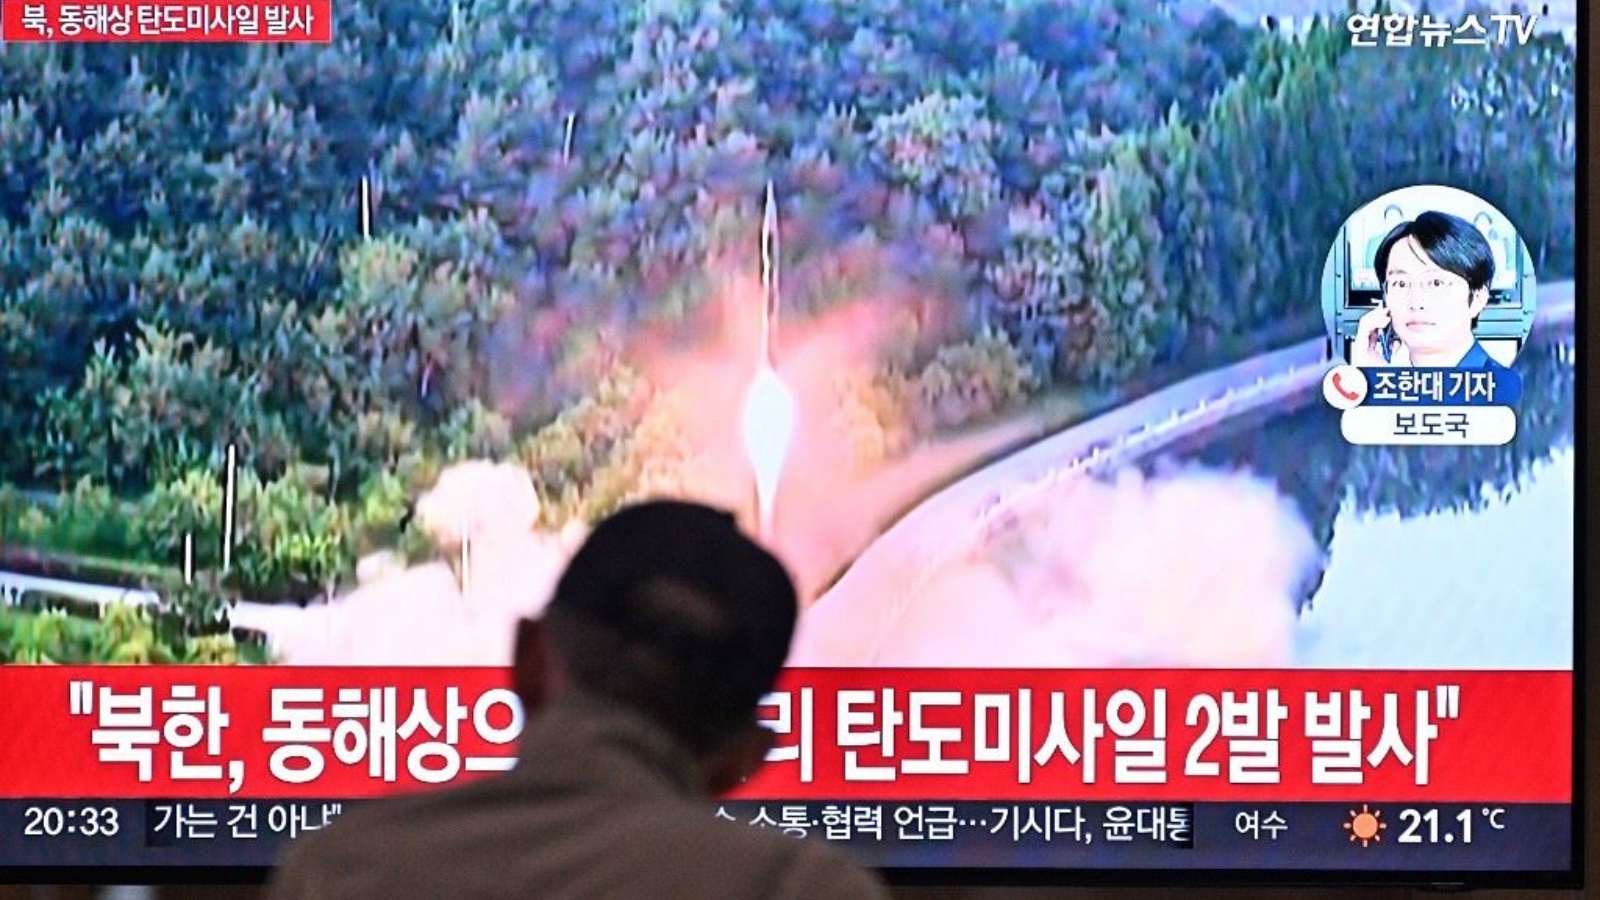 إطلاق صاروخ باليستي في كوريا الشمالية 